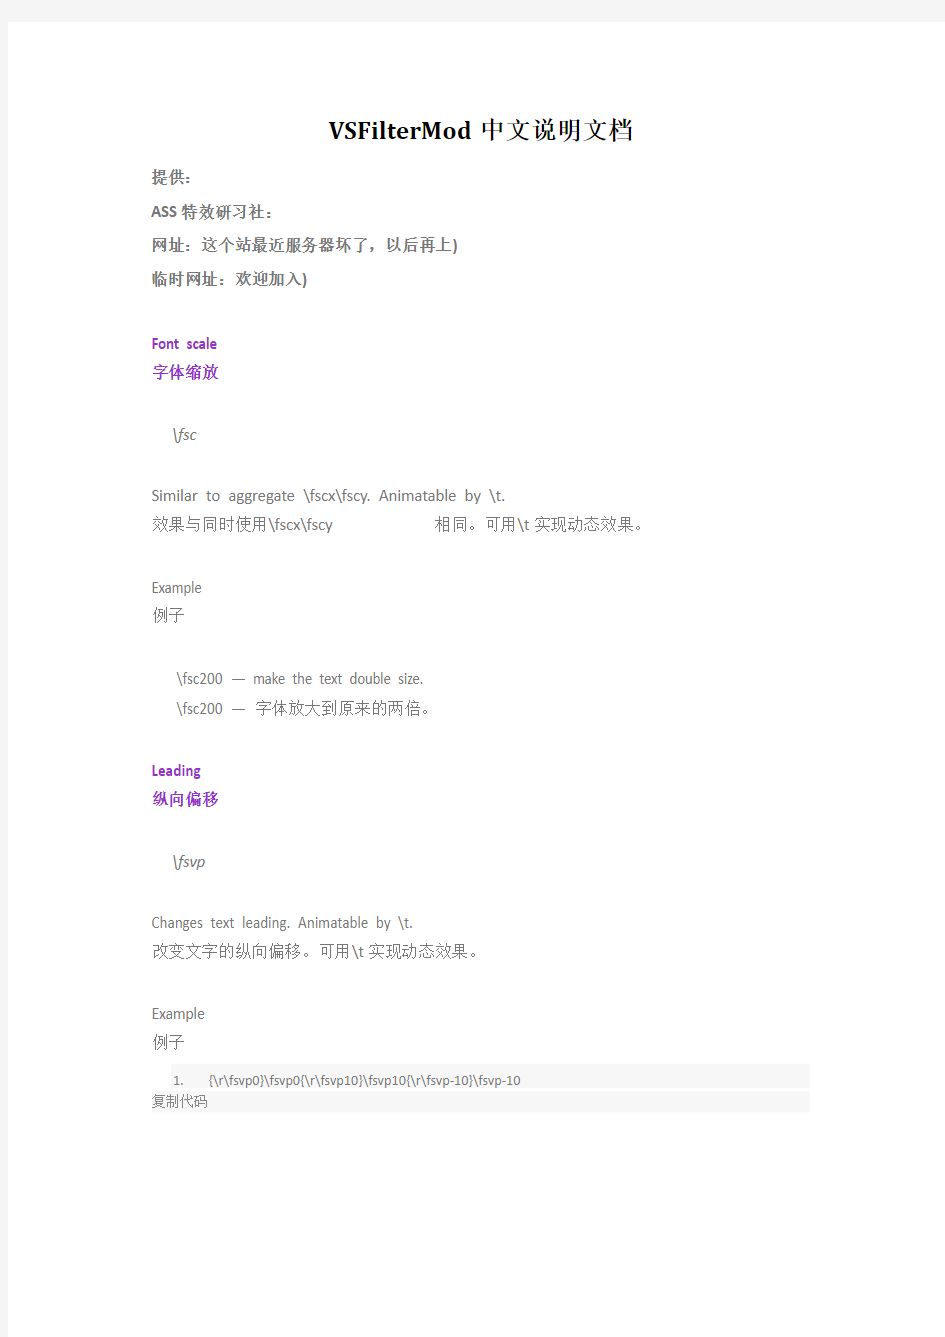 vsfiltermod中文说明文档(ass 代码)